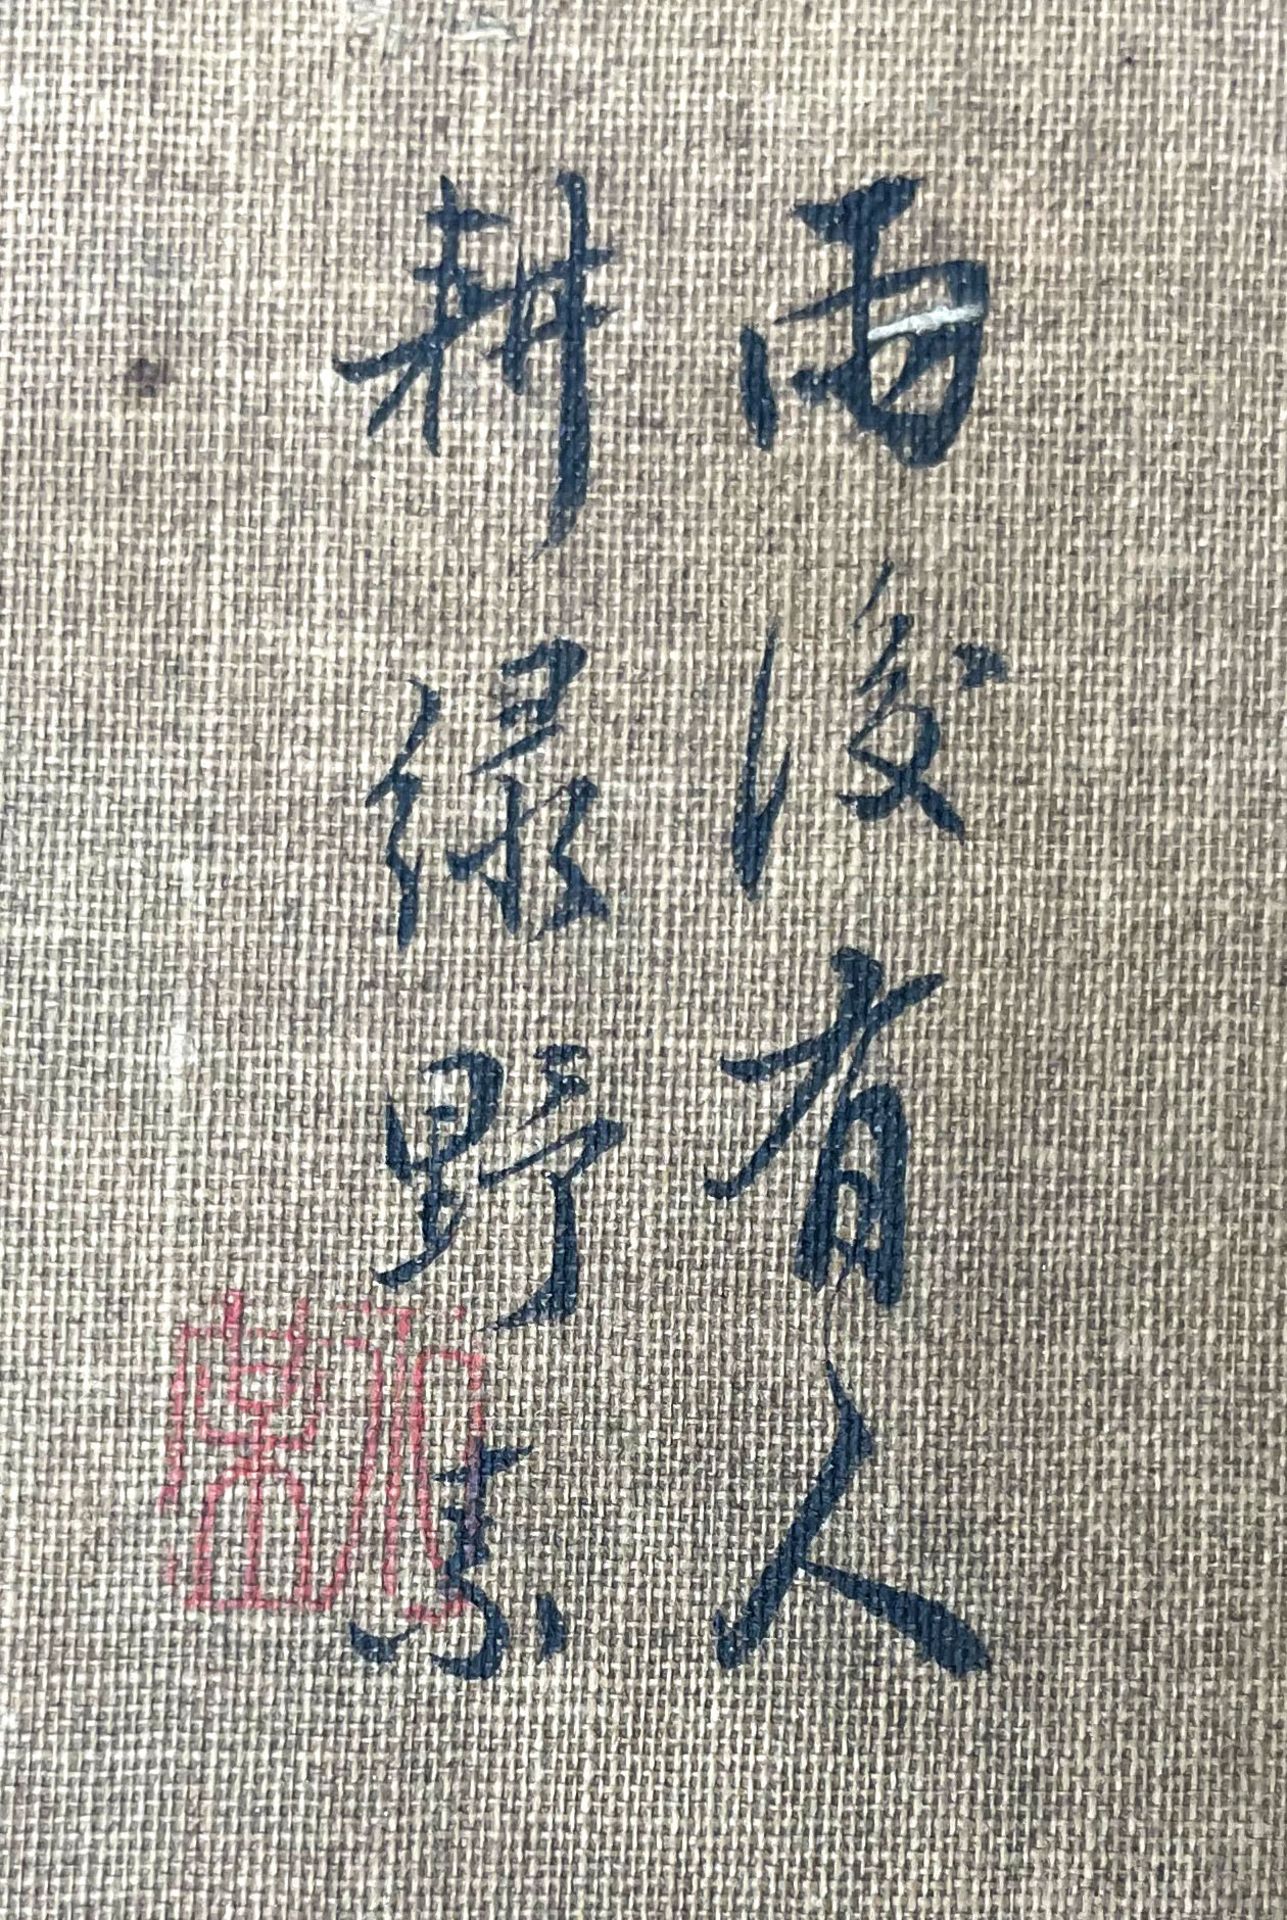 UNDEUTLICH SIGNIERT (XIX - XX). Chinesischer Bauer beim Pflügen. - Image 3 of 6